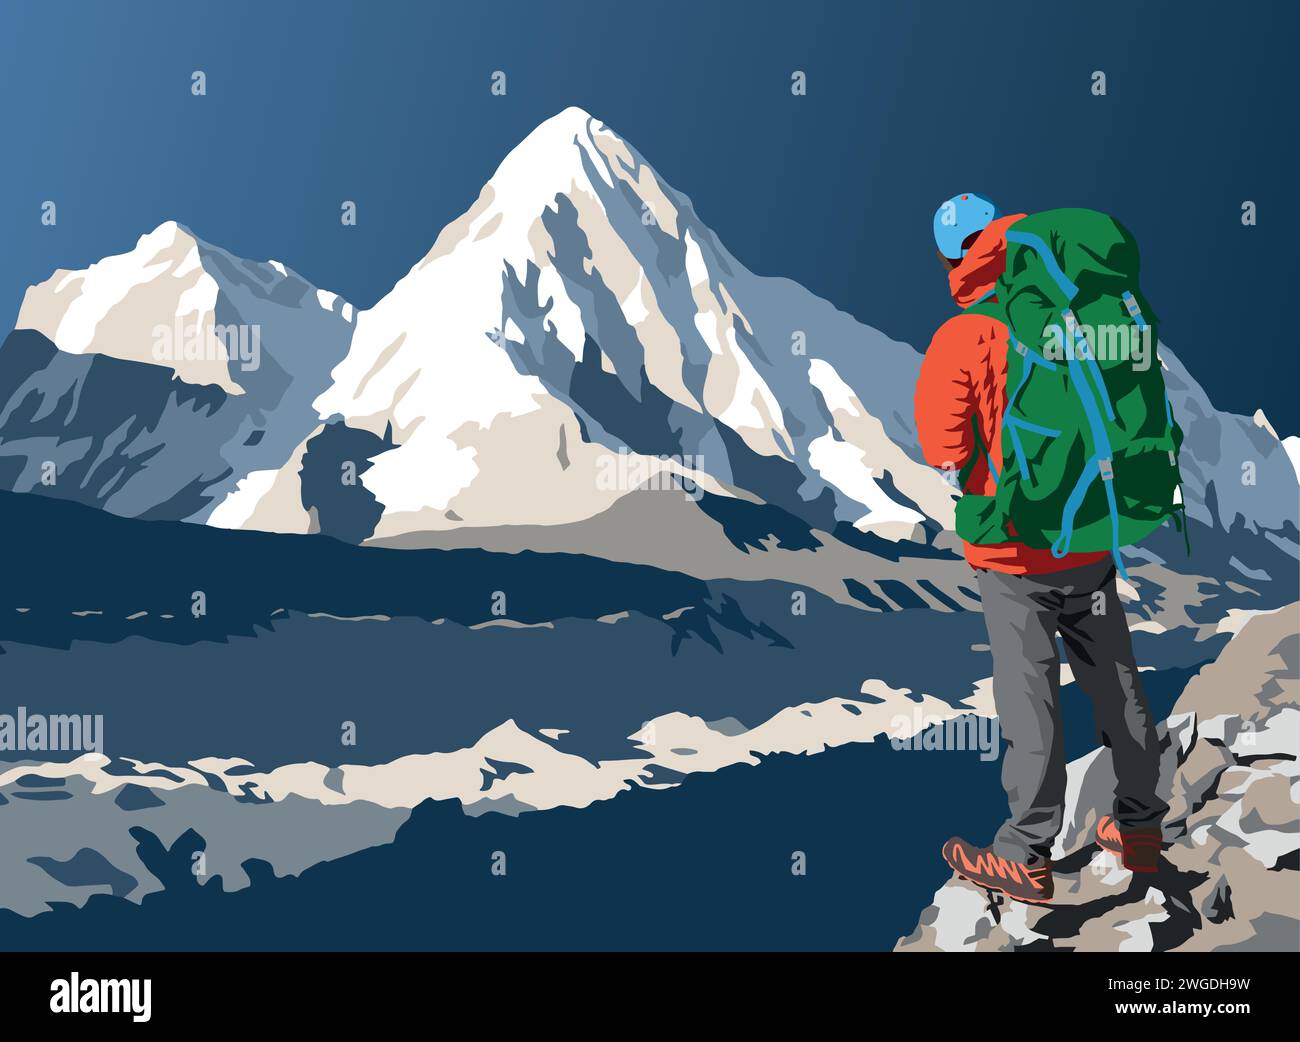 Glacier de Khumbu, sommet du mont Pumori et randonneur sur le chemin du camp de base du mont Everest, illustration vectorielle, vallée de Khumbu Illustration de Vecteur